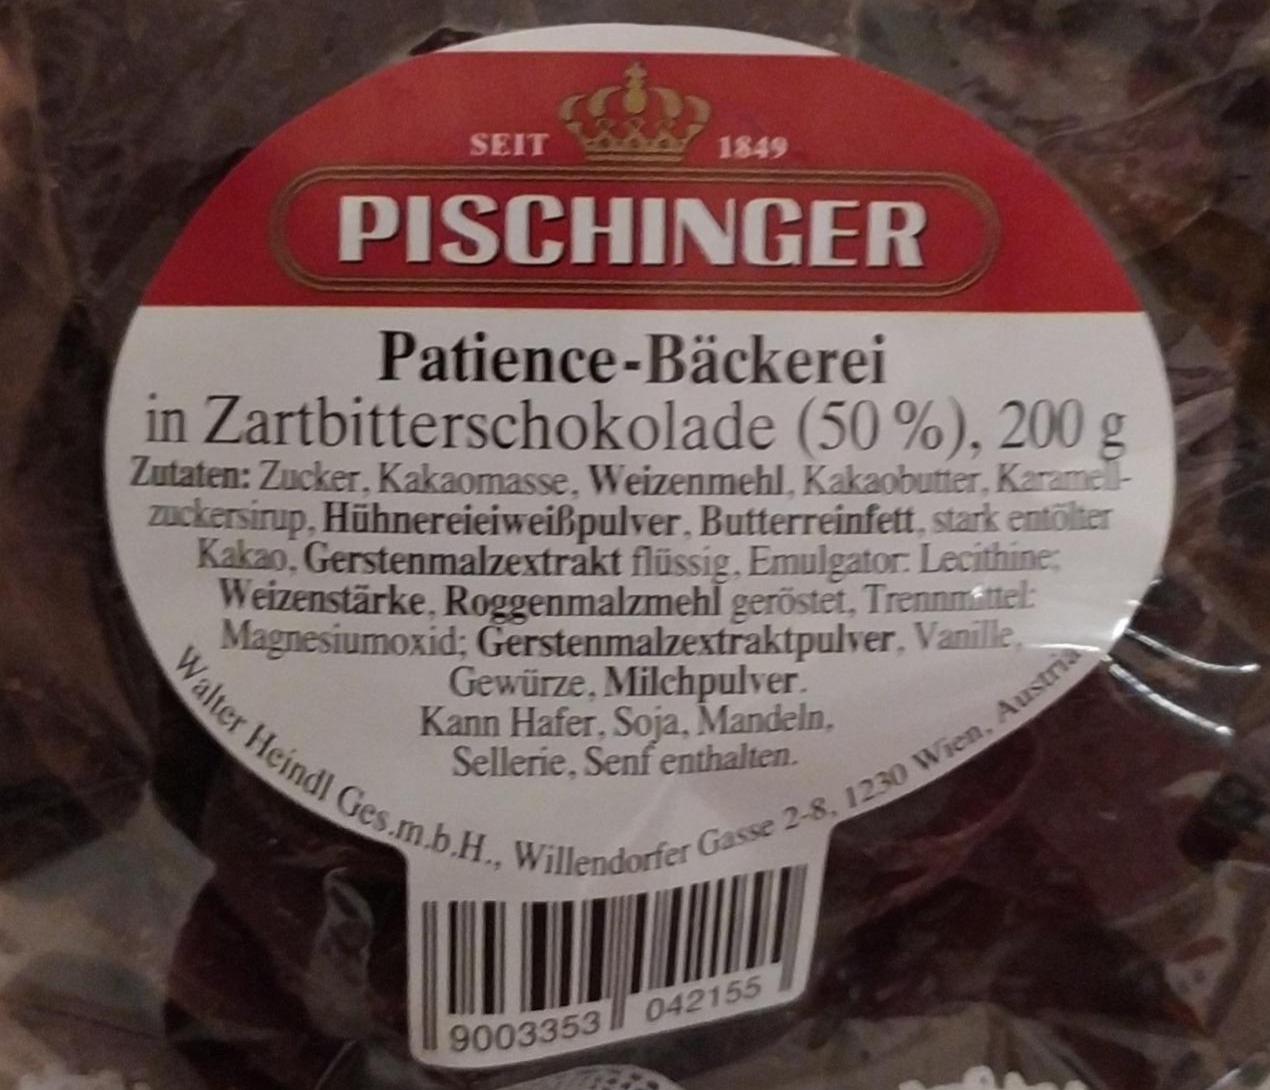 Fotografie - patience-backerei in Zarbitterschokolade Pischinger